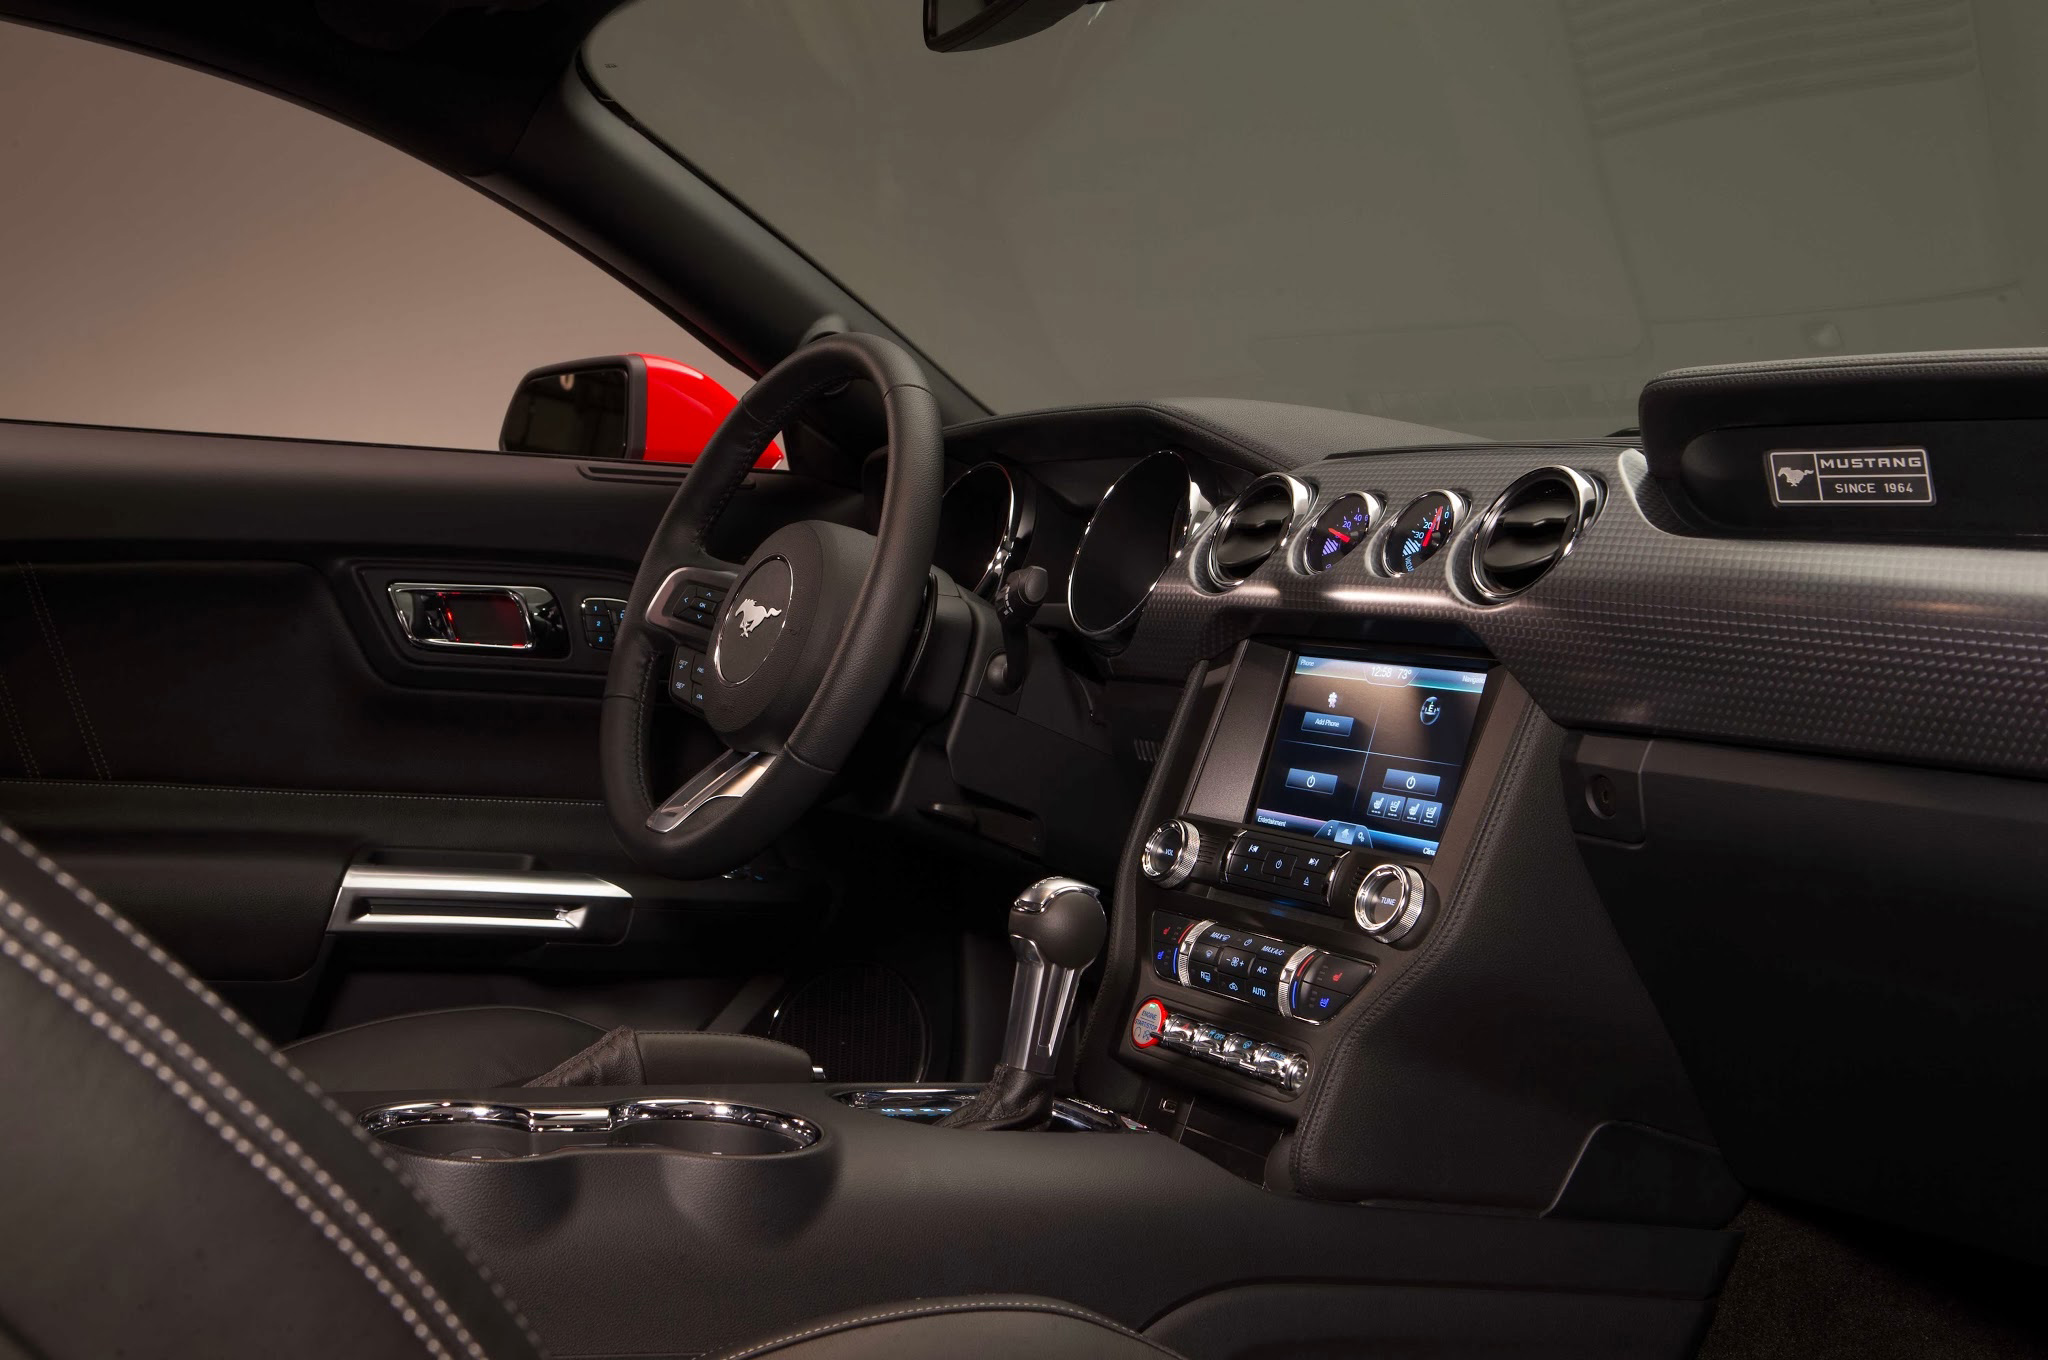 2015 Mustang Gt Interior